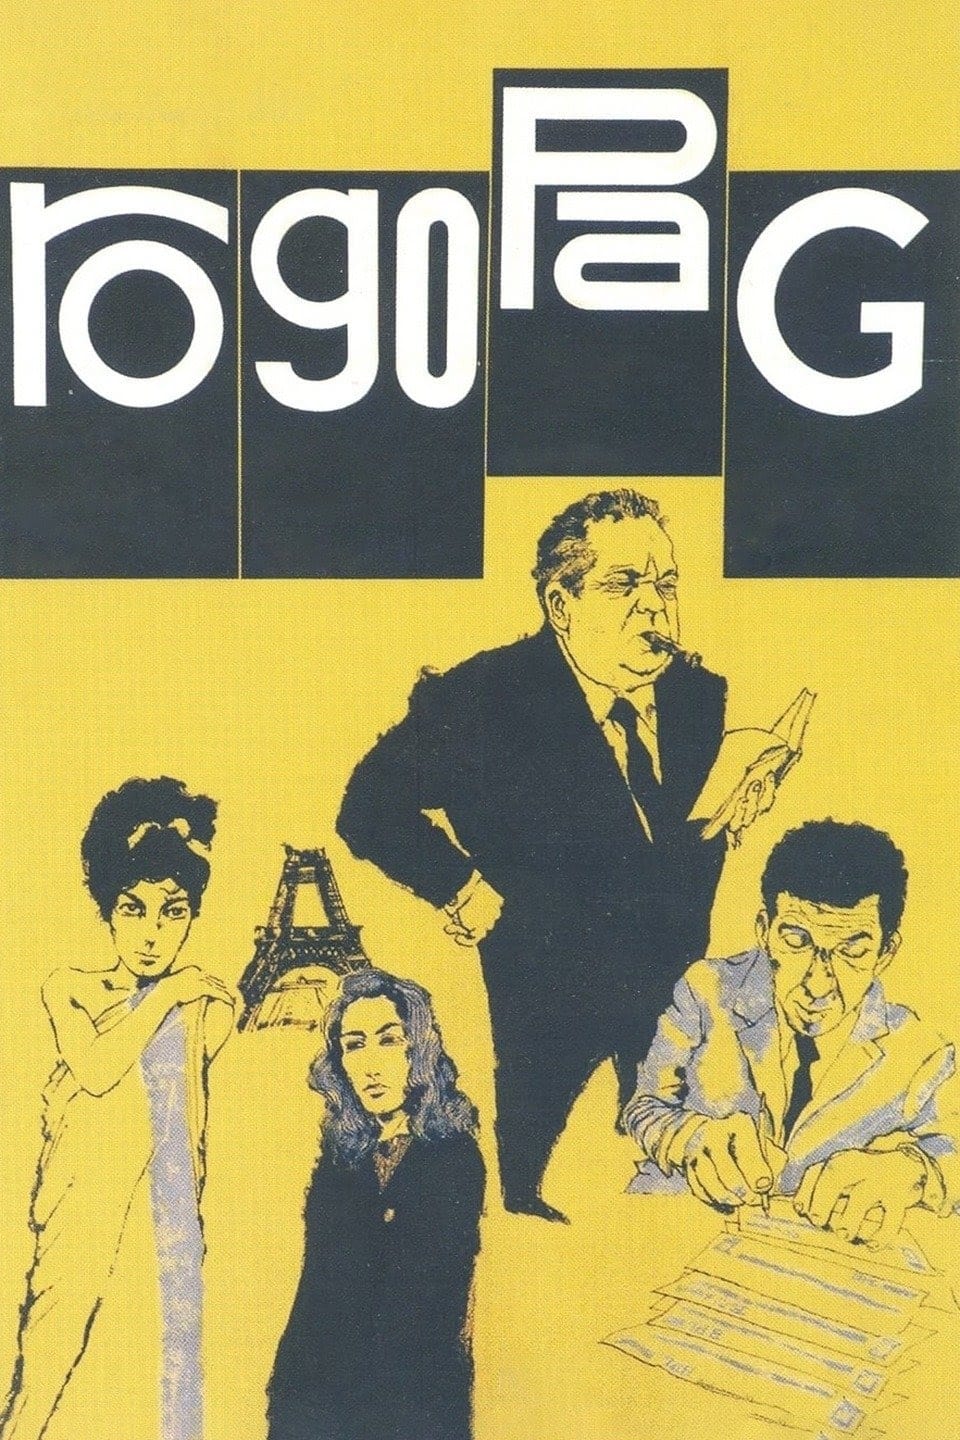 Rogopag - Relações Humanas (1963)